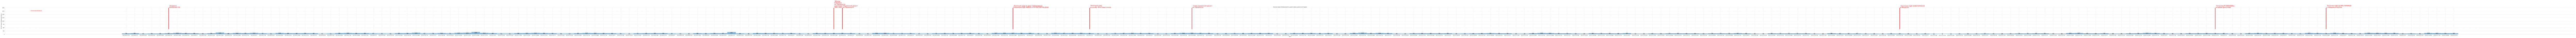 Гистограмма, показывающая количество предложений домов, дач и коттеджей в Крыму по дням c 2023-06-01 по сегодняшний день